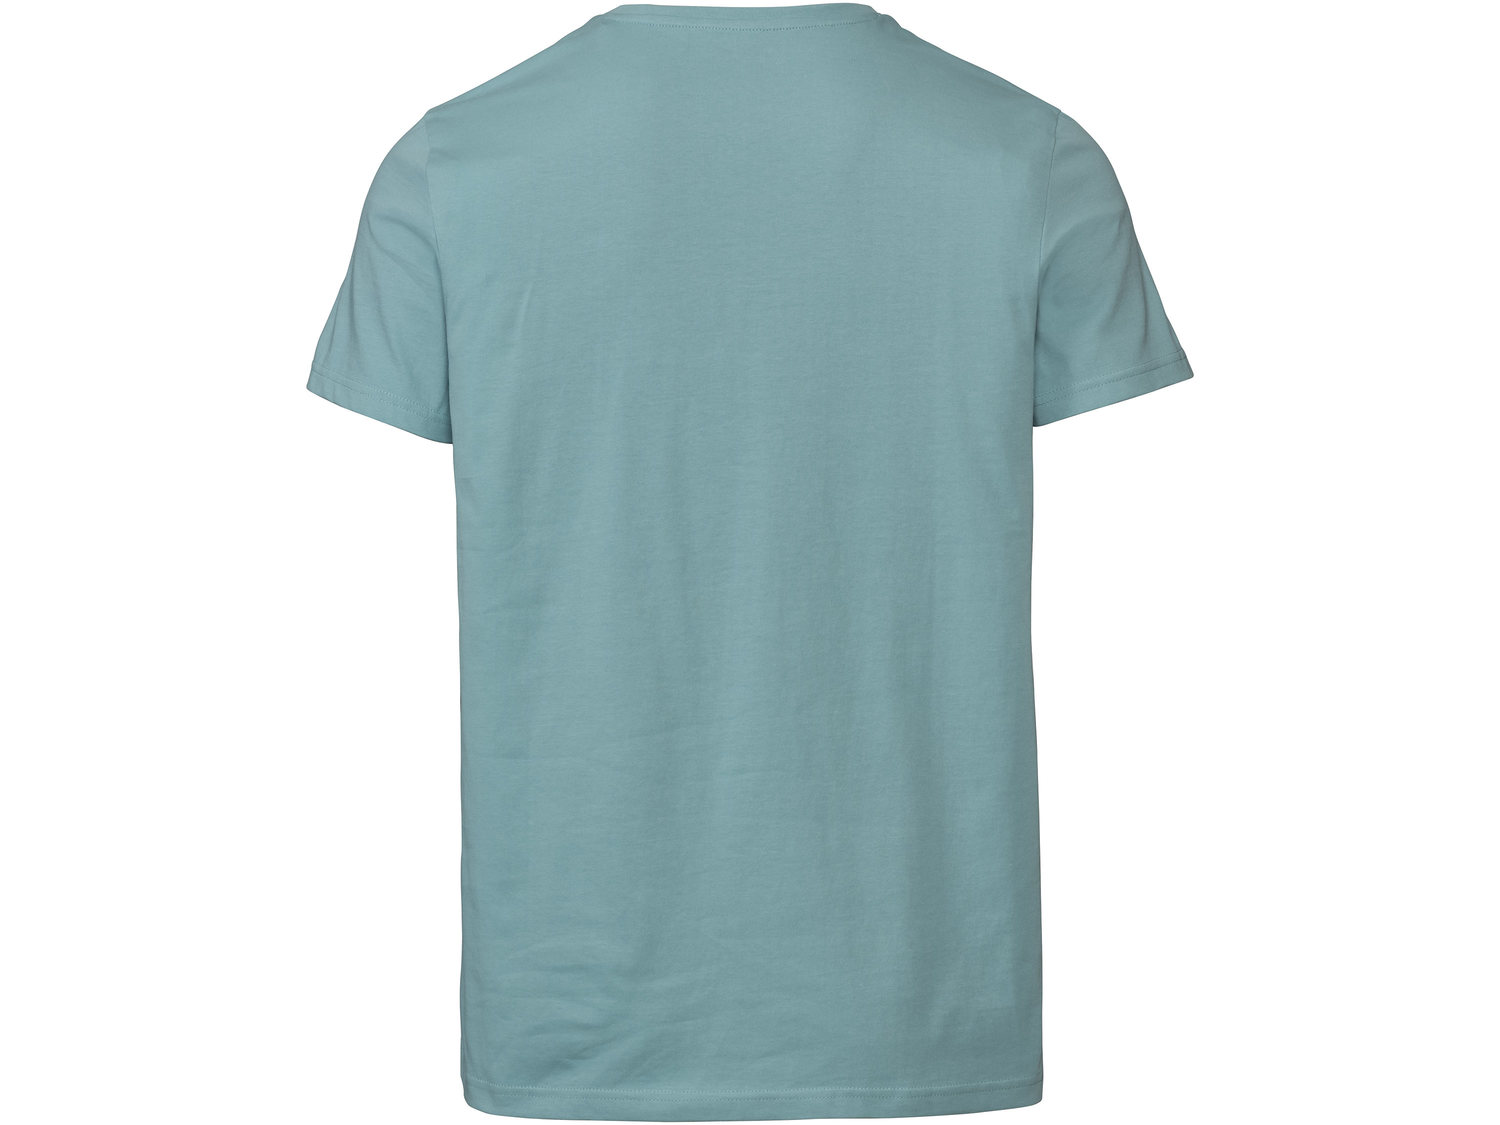 T-shirt Livergy, cena 12,99 PLN 
- 100% bawełny
- rozmiary: M-XL
- Hohenstein bezpieczne ...